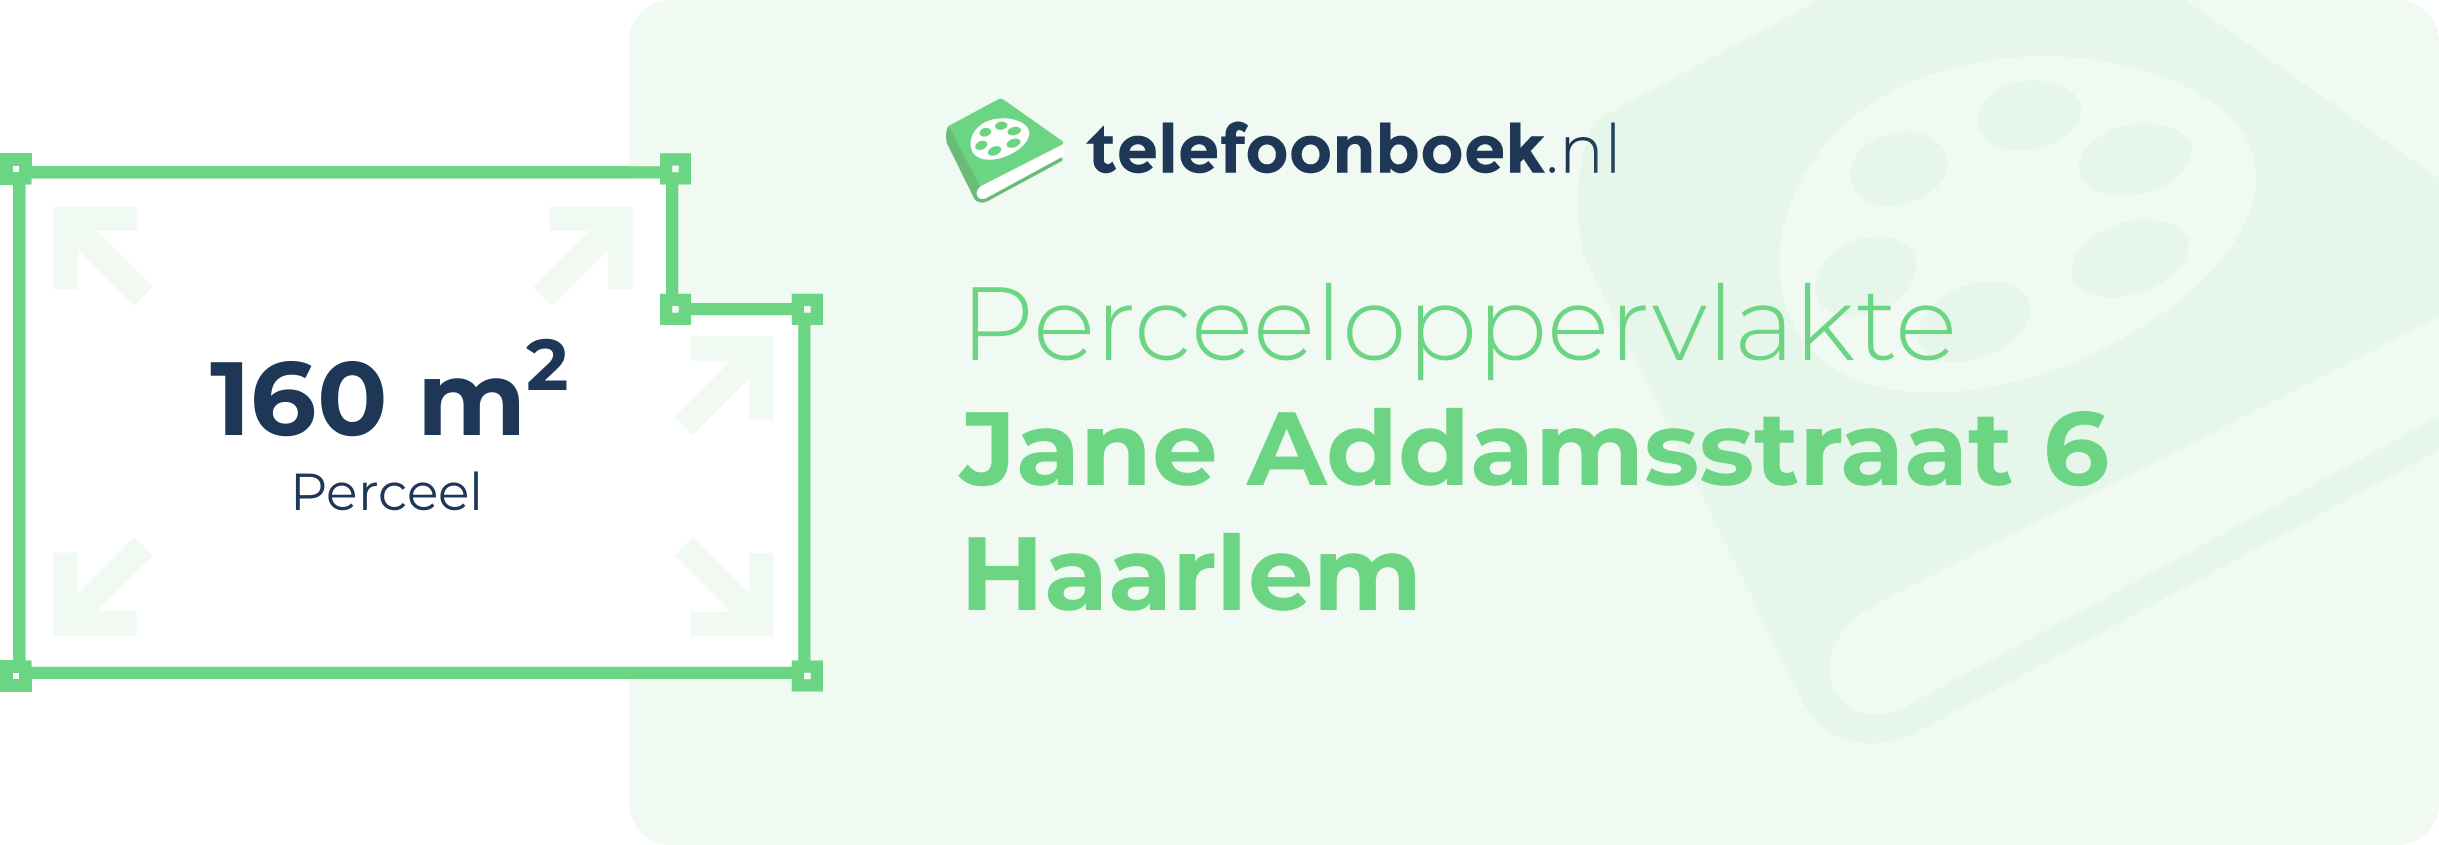 Perceeloppervlakte Jane Addamsstraat 6 Haarlem